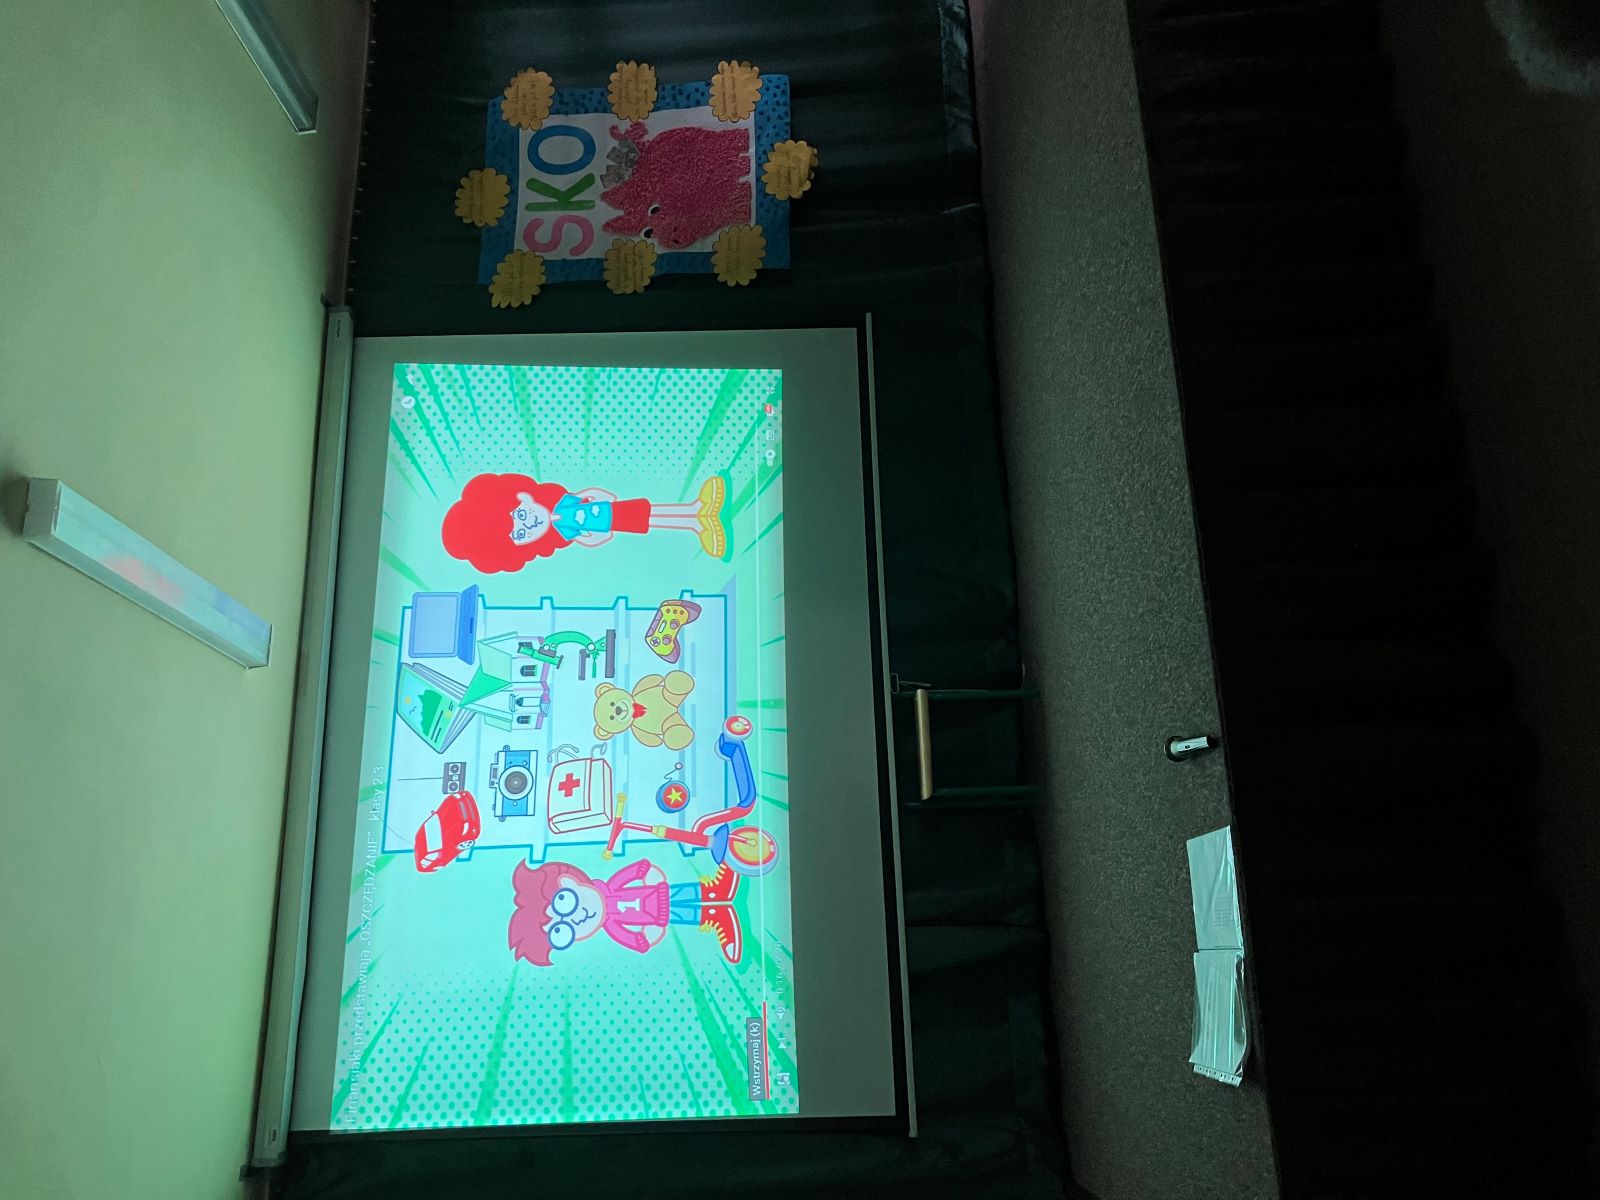 Scena, na której jest wyświetlany film edukacyjny, który przedstawia dwoje dzieci w sklepie z zabawkami. Obok zawieszona jest plansza z napisem SKO, dużą świnką-skarbonką, wokół której naklejone są hasła związane z oszczędzaniem